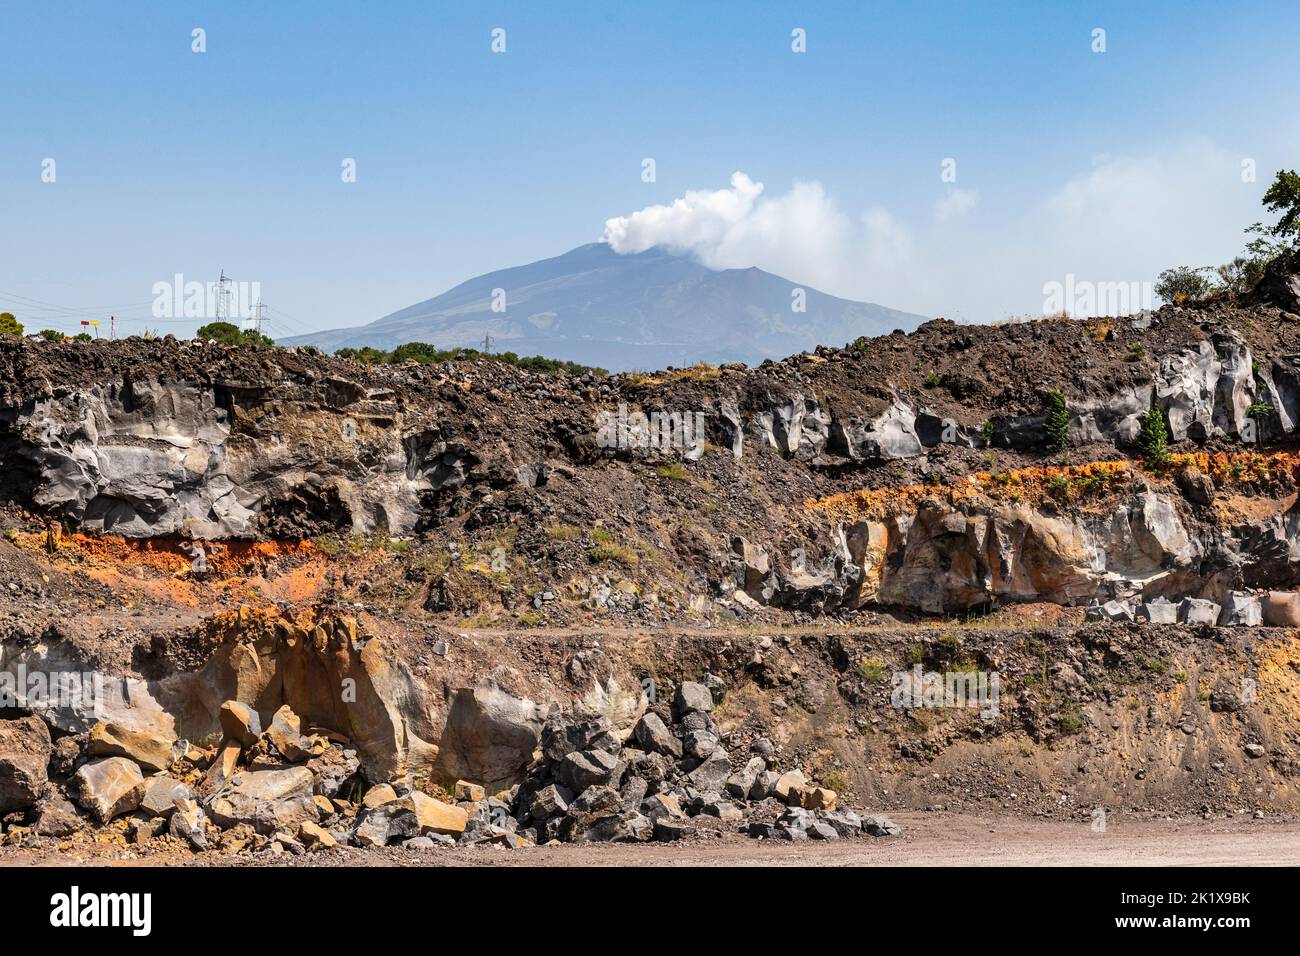 Vista dell'Etna da una cava di basalto sul fianco, con strati di depositi lavici provenienti da una serie di eruzioni dal 1669 (lo strato più basso) Foto Stock